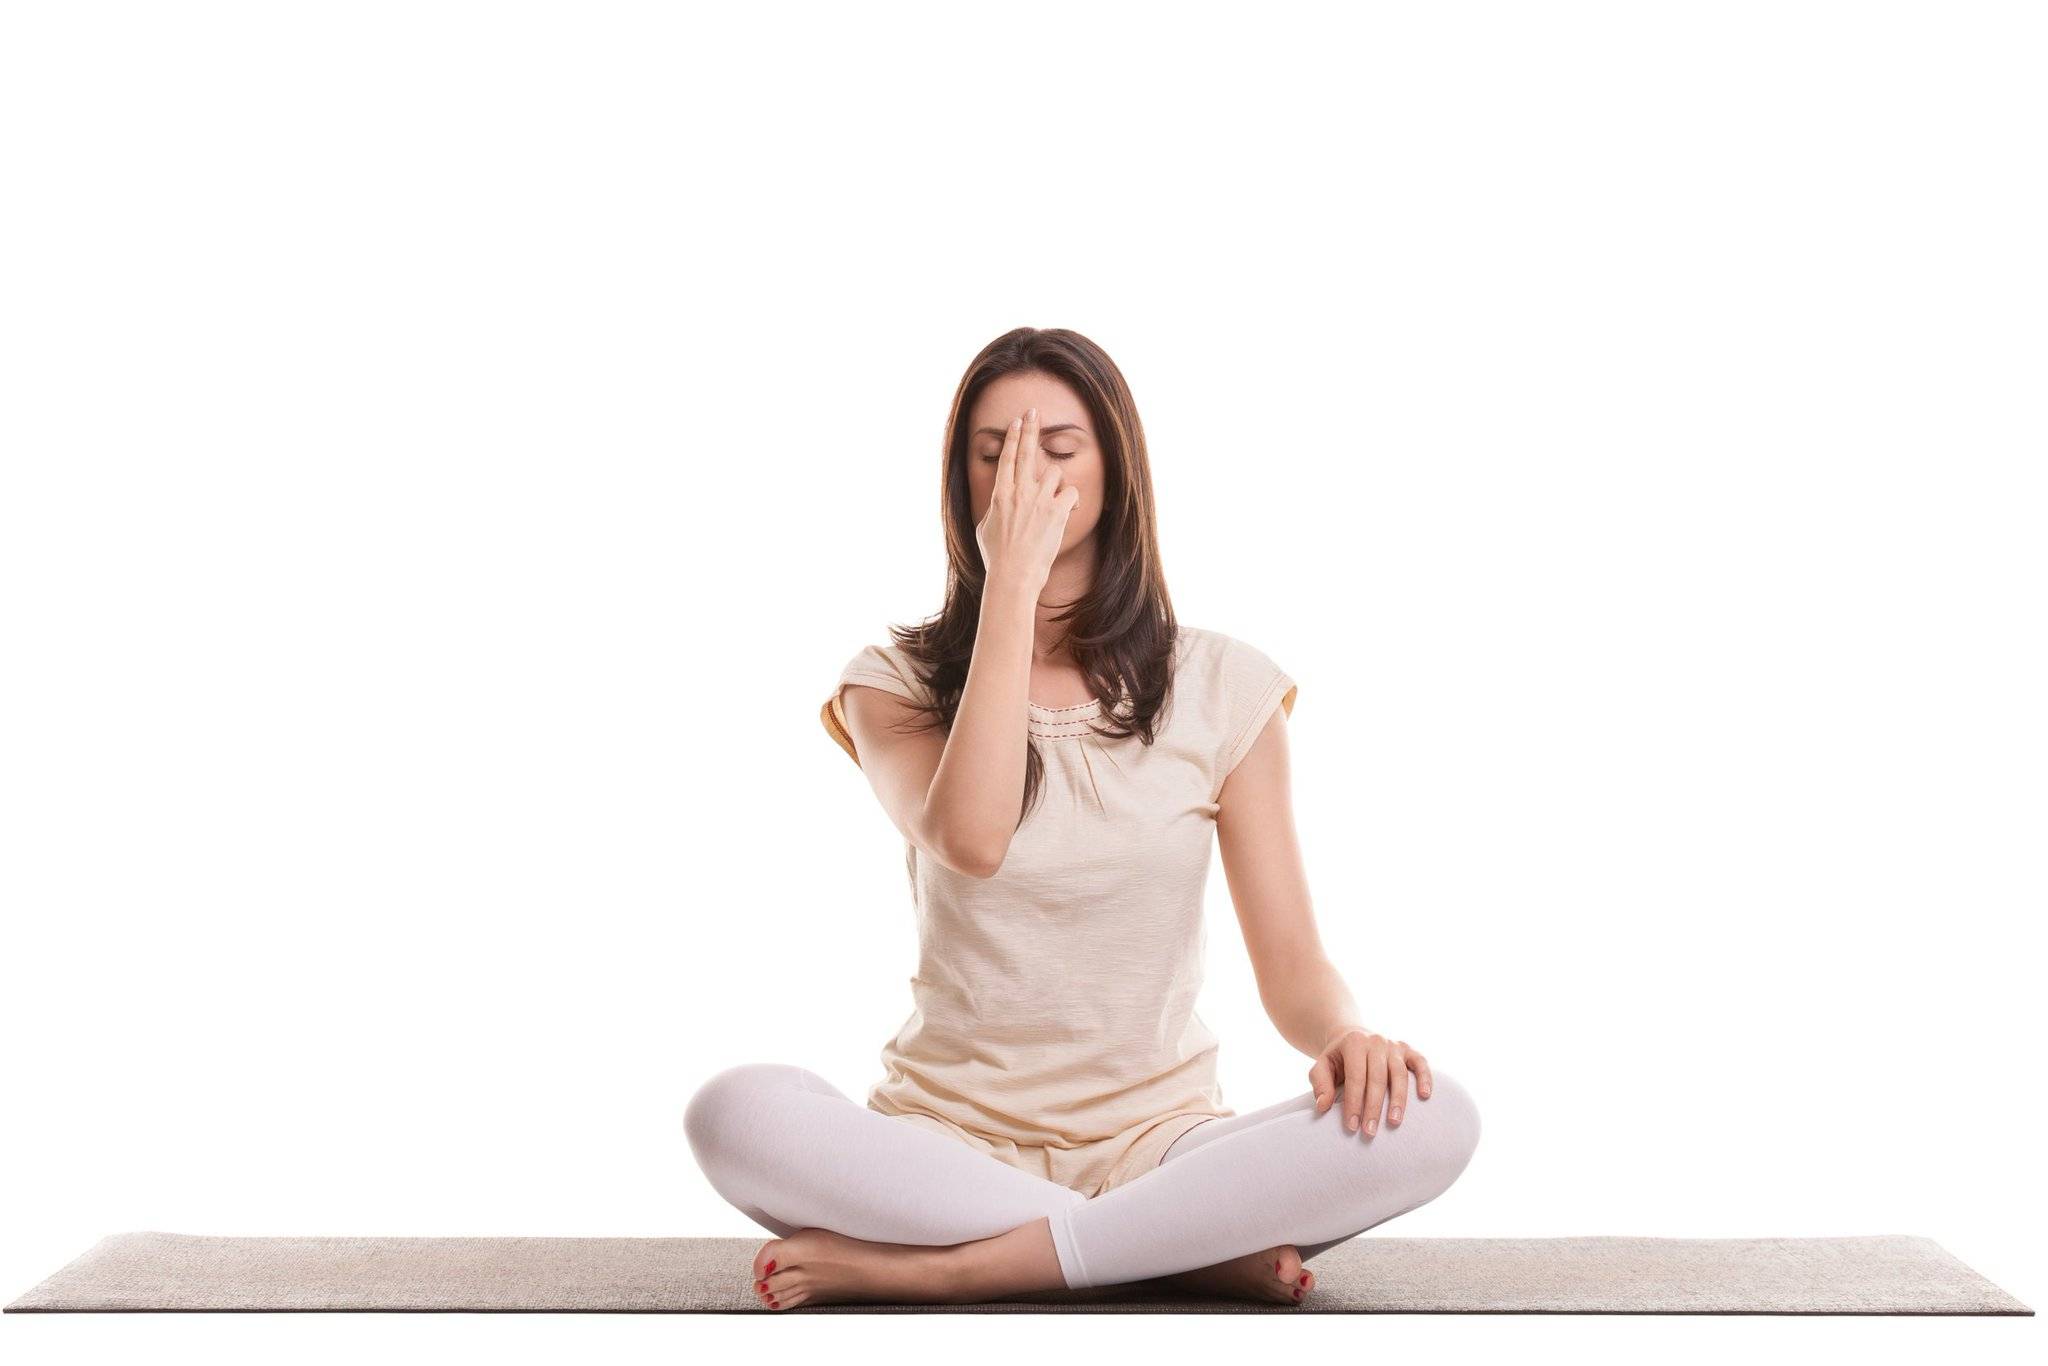 Нади шодхана - техника выполнения дыхания, польза для ума и тела, советы начинающим